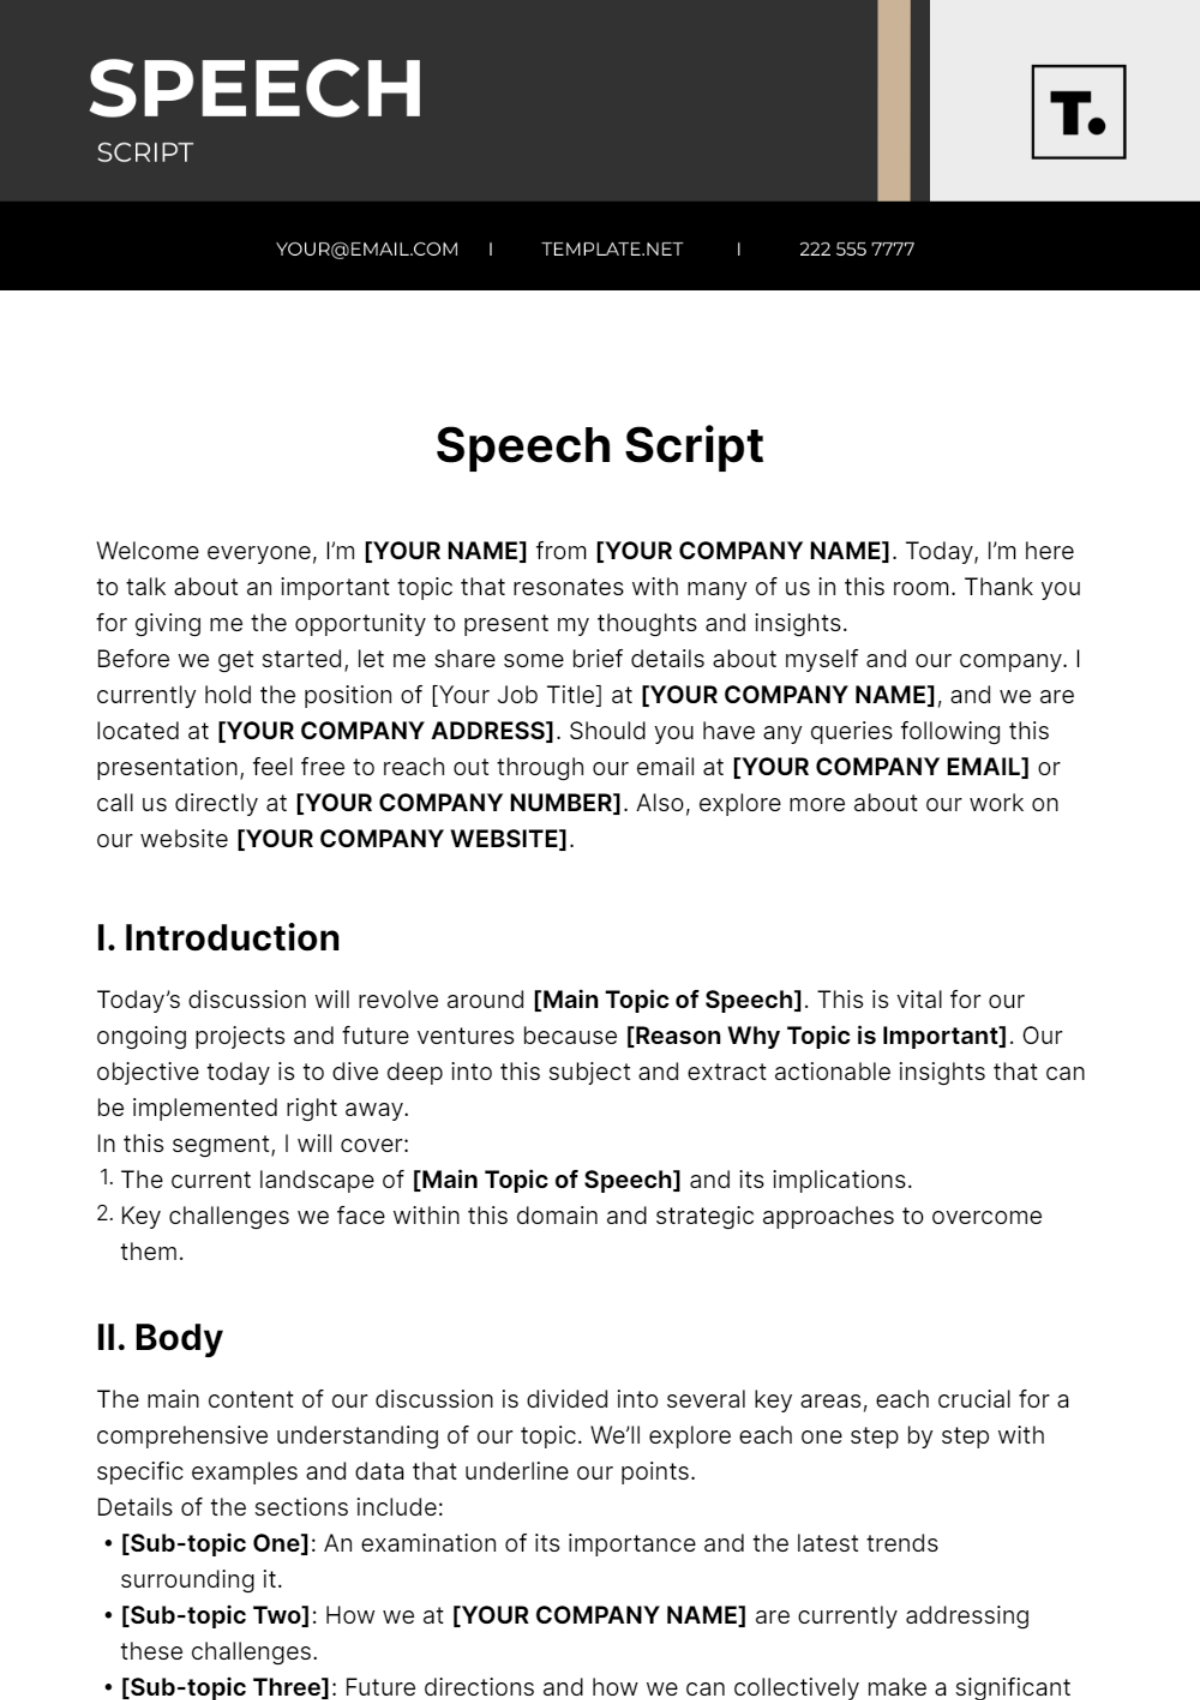 Speech Script Template